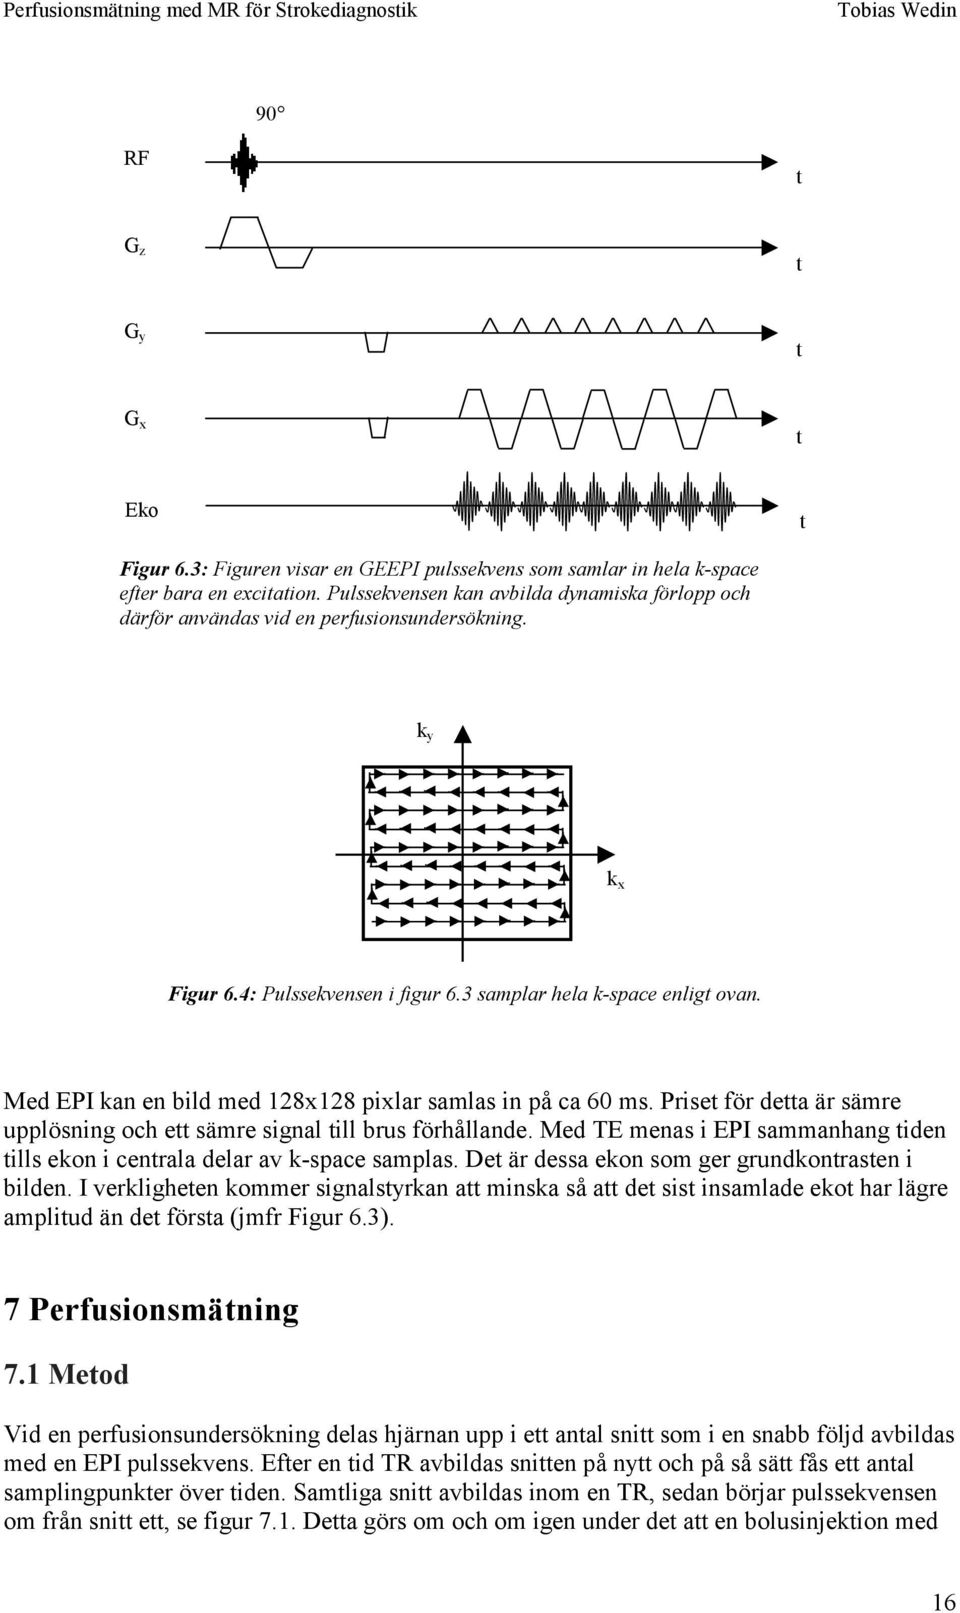 Med EPI kan en bild med 128x128 pixlar samlas in på ca 60 ms. Prise för dea är sämre upplösning och e sämre signal ill brus förhållande.